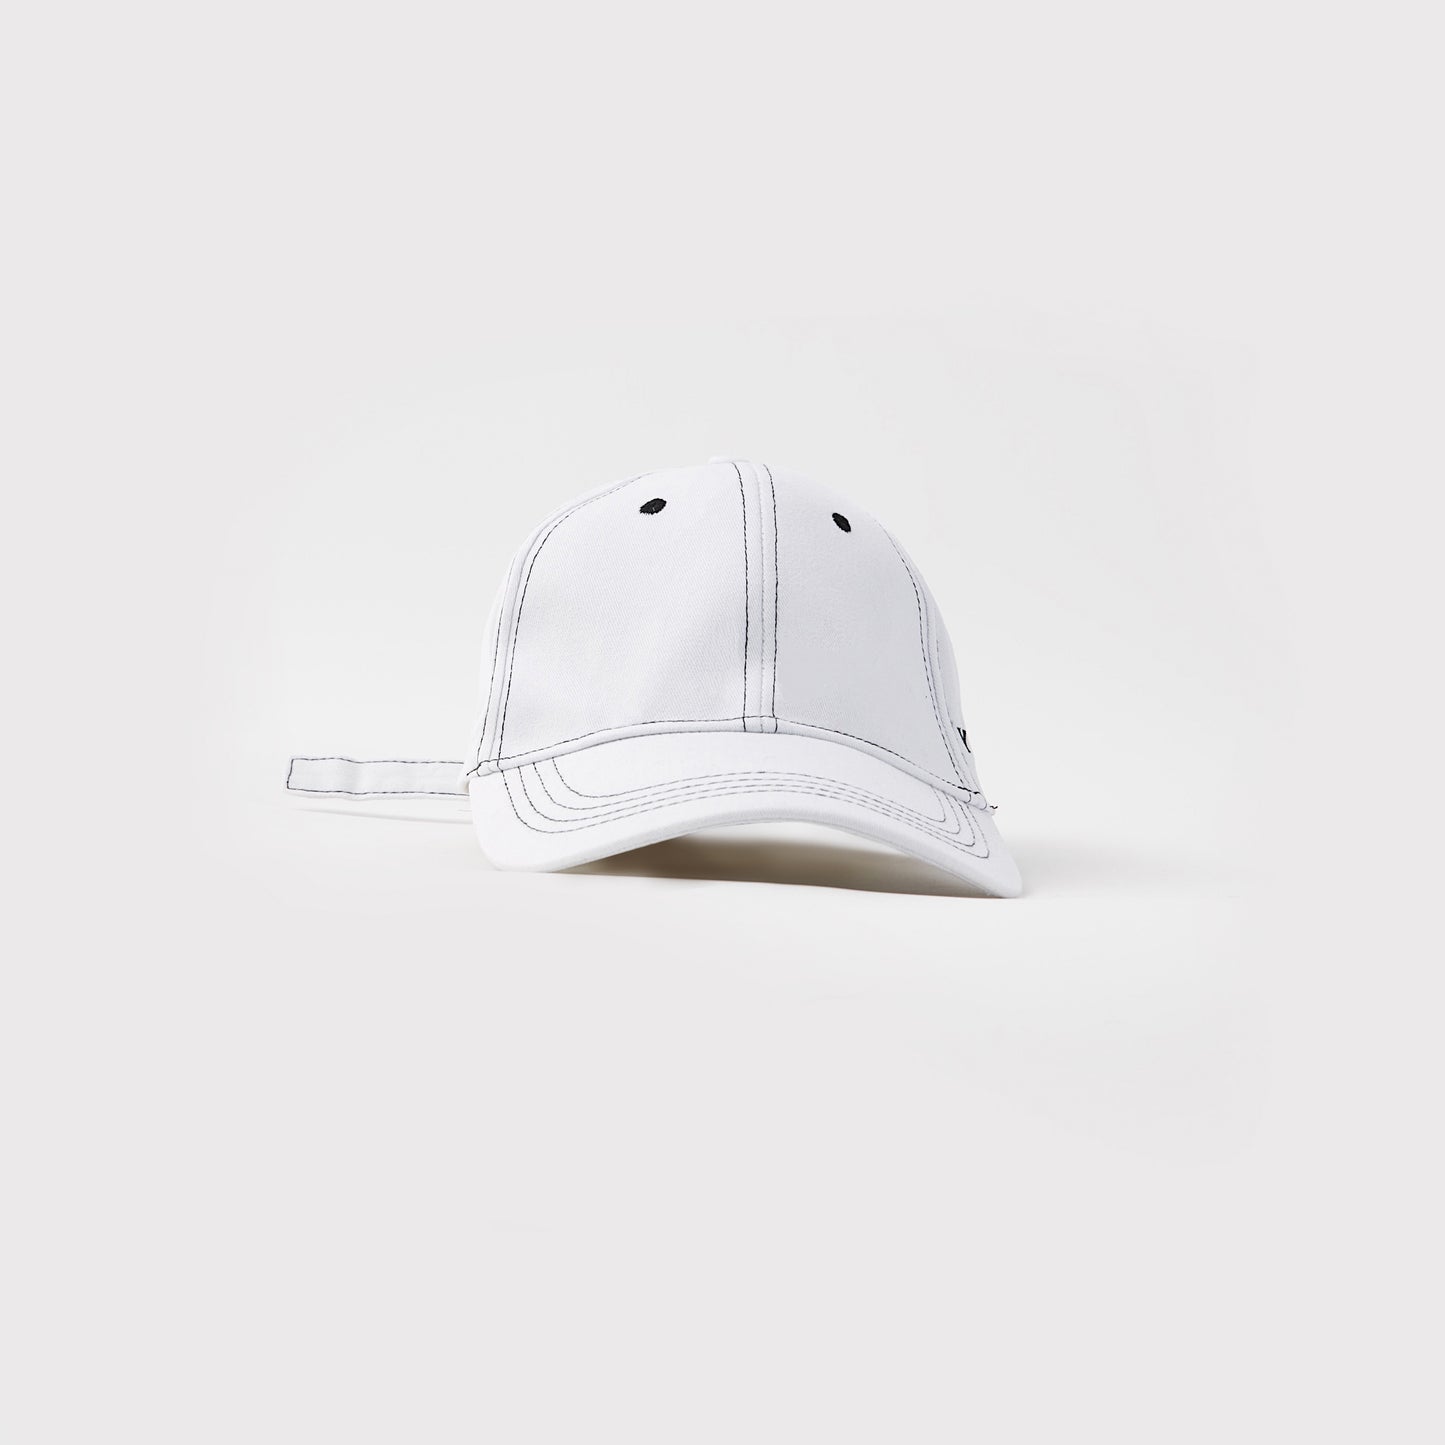 YYATOMIC LOGO BALL CAP (WHITE)